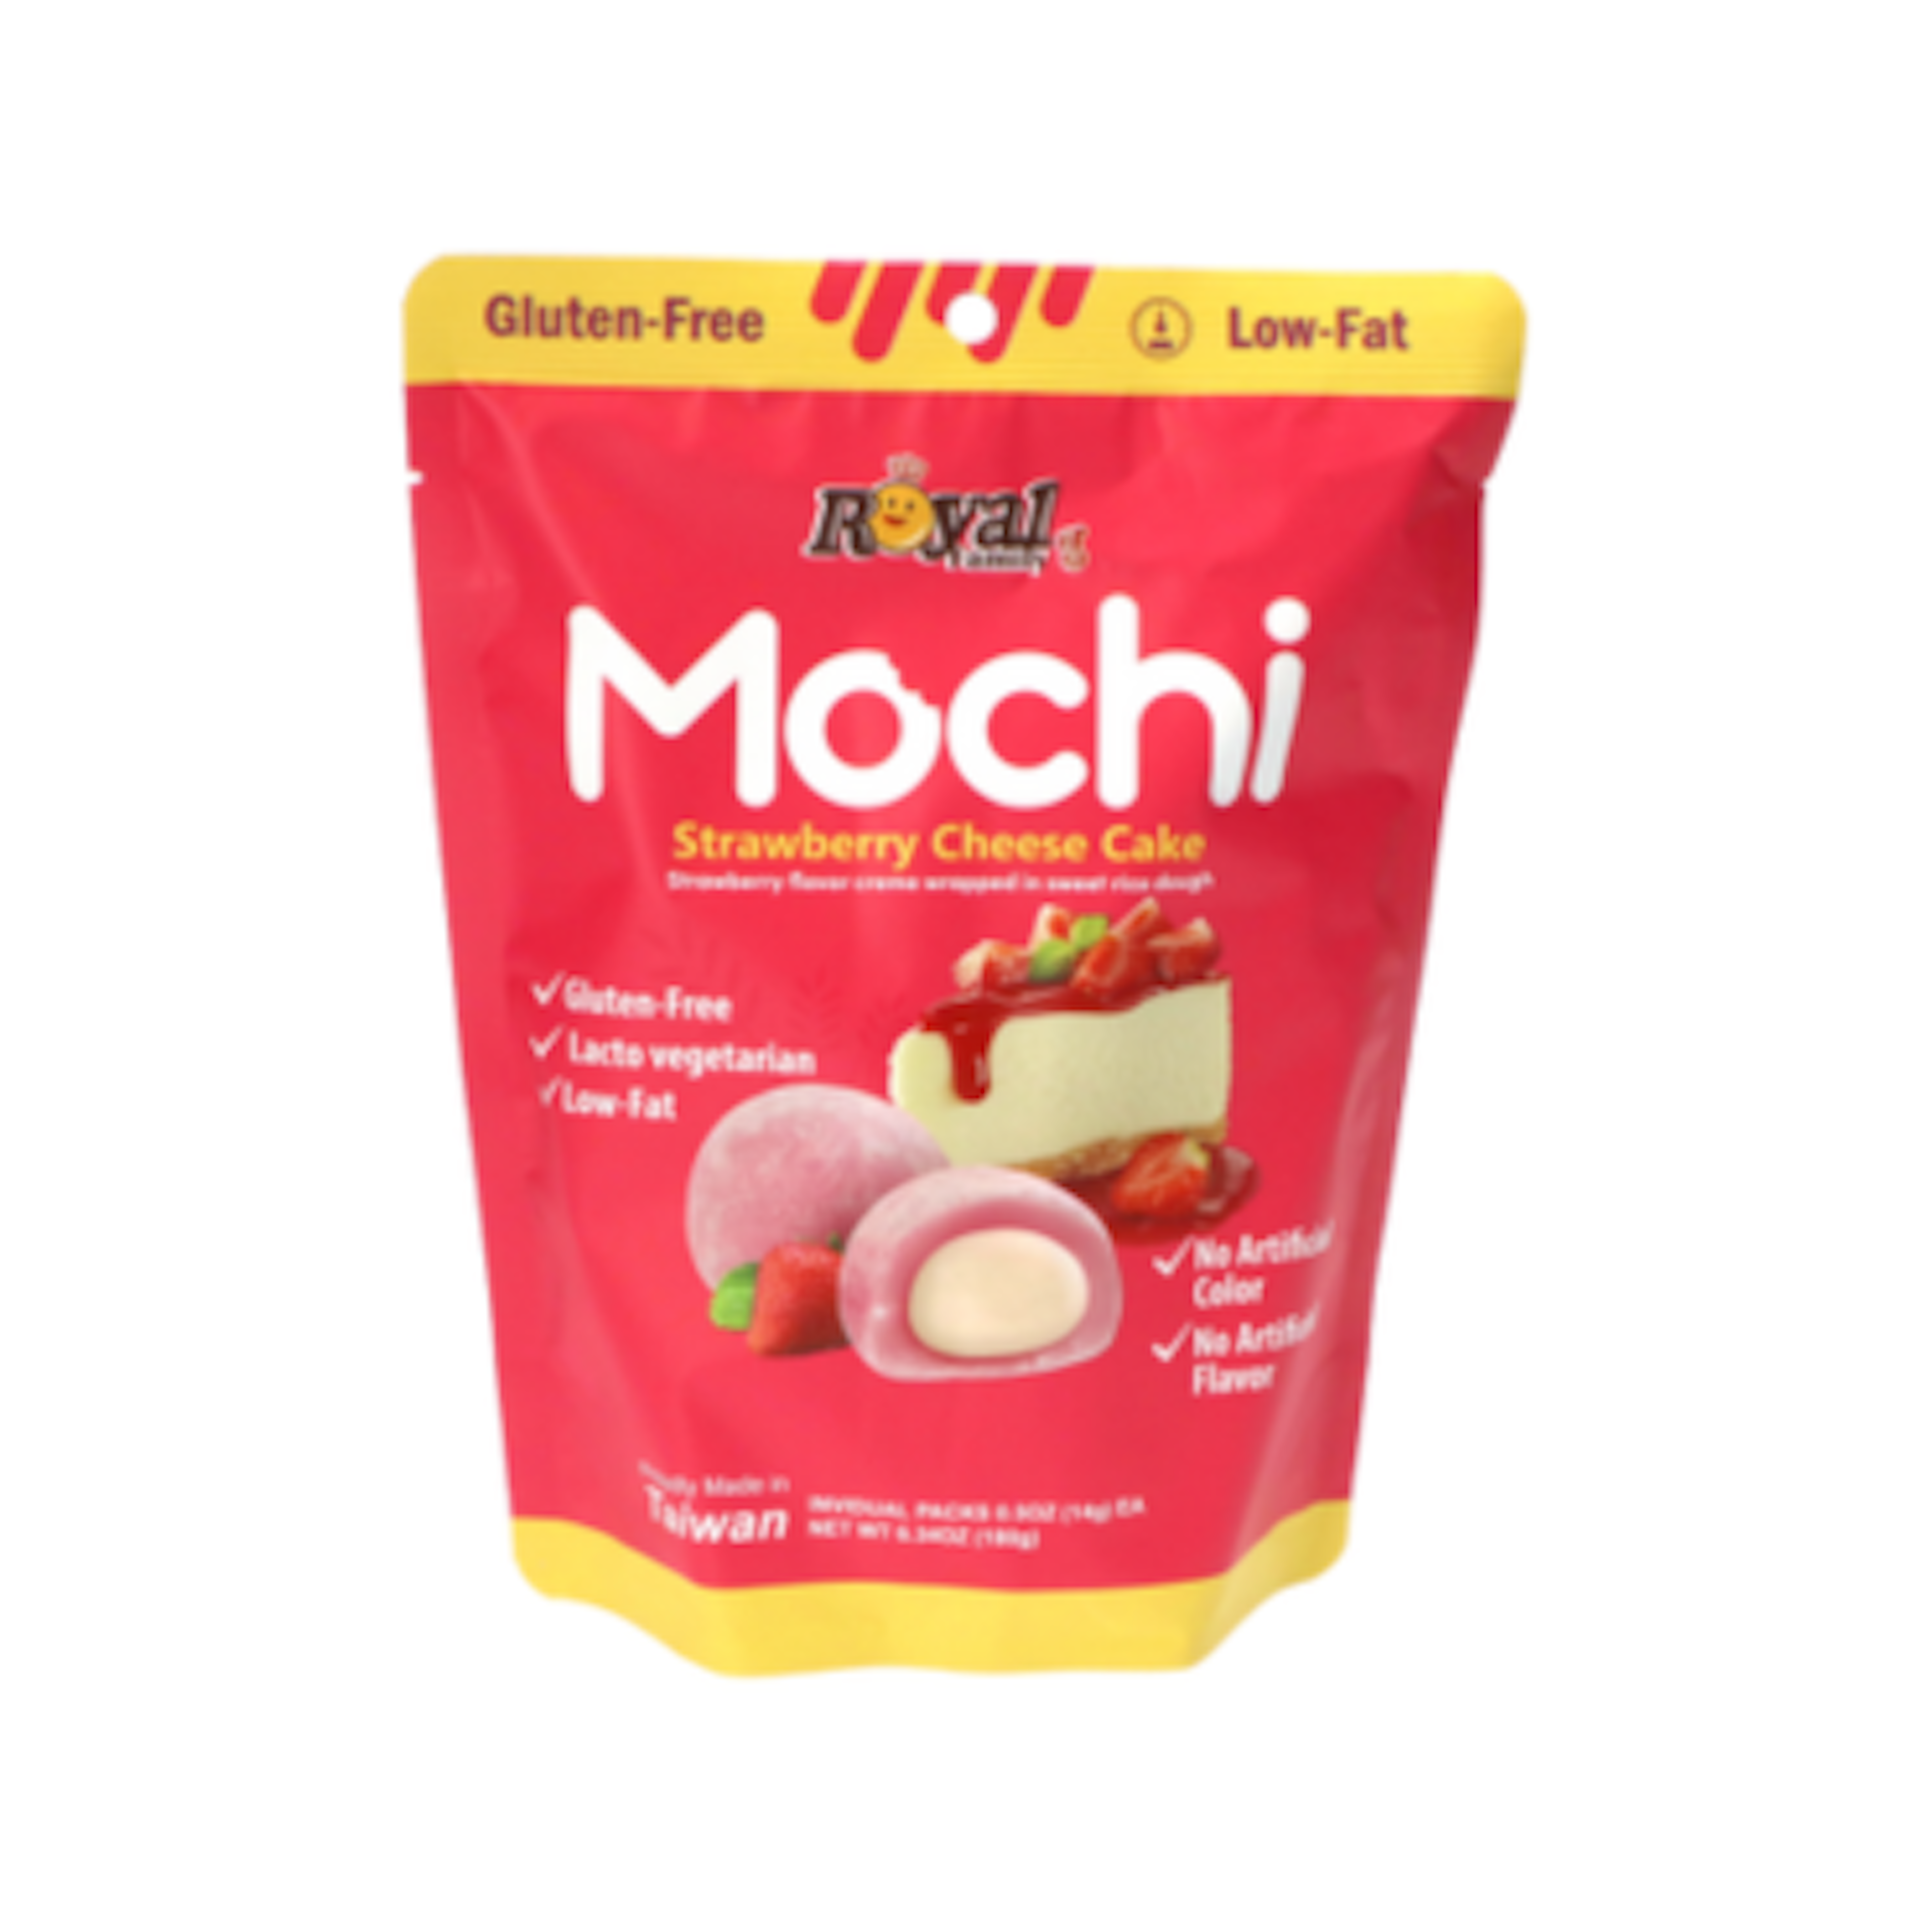 Royal Family Mochi Strawberry Cheese Cake - Zarte Mochi ohne künstliche Zusatzstoffe, 180g